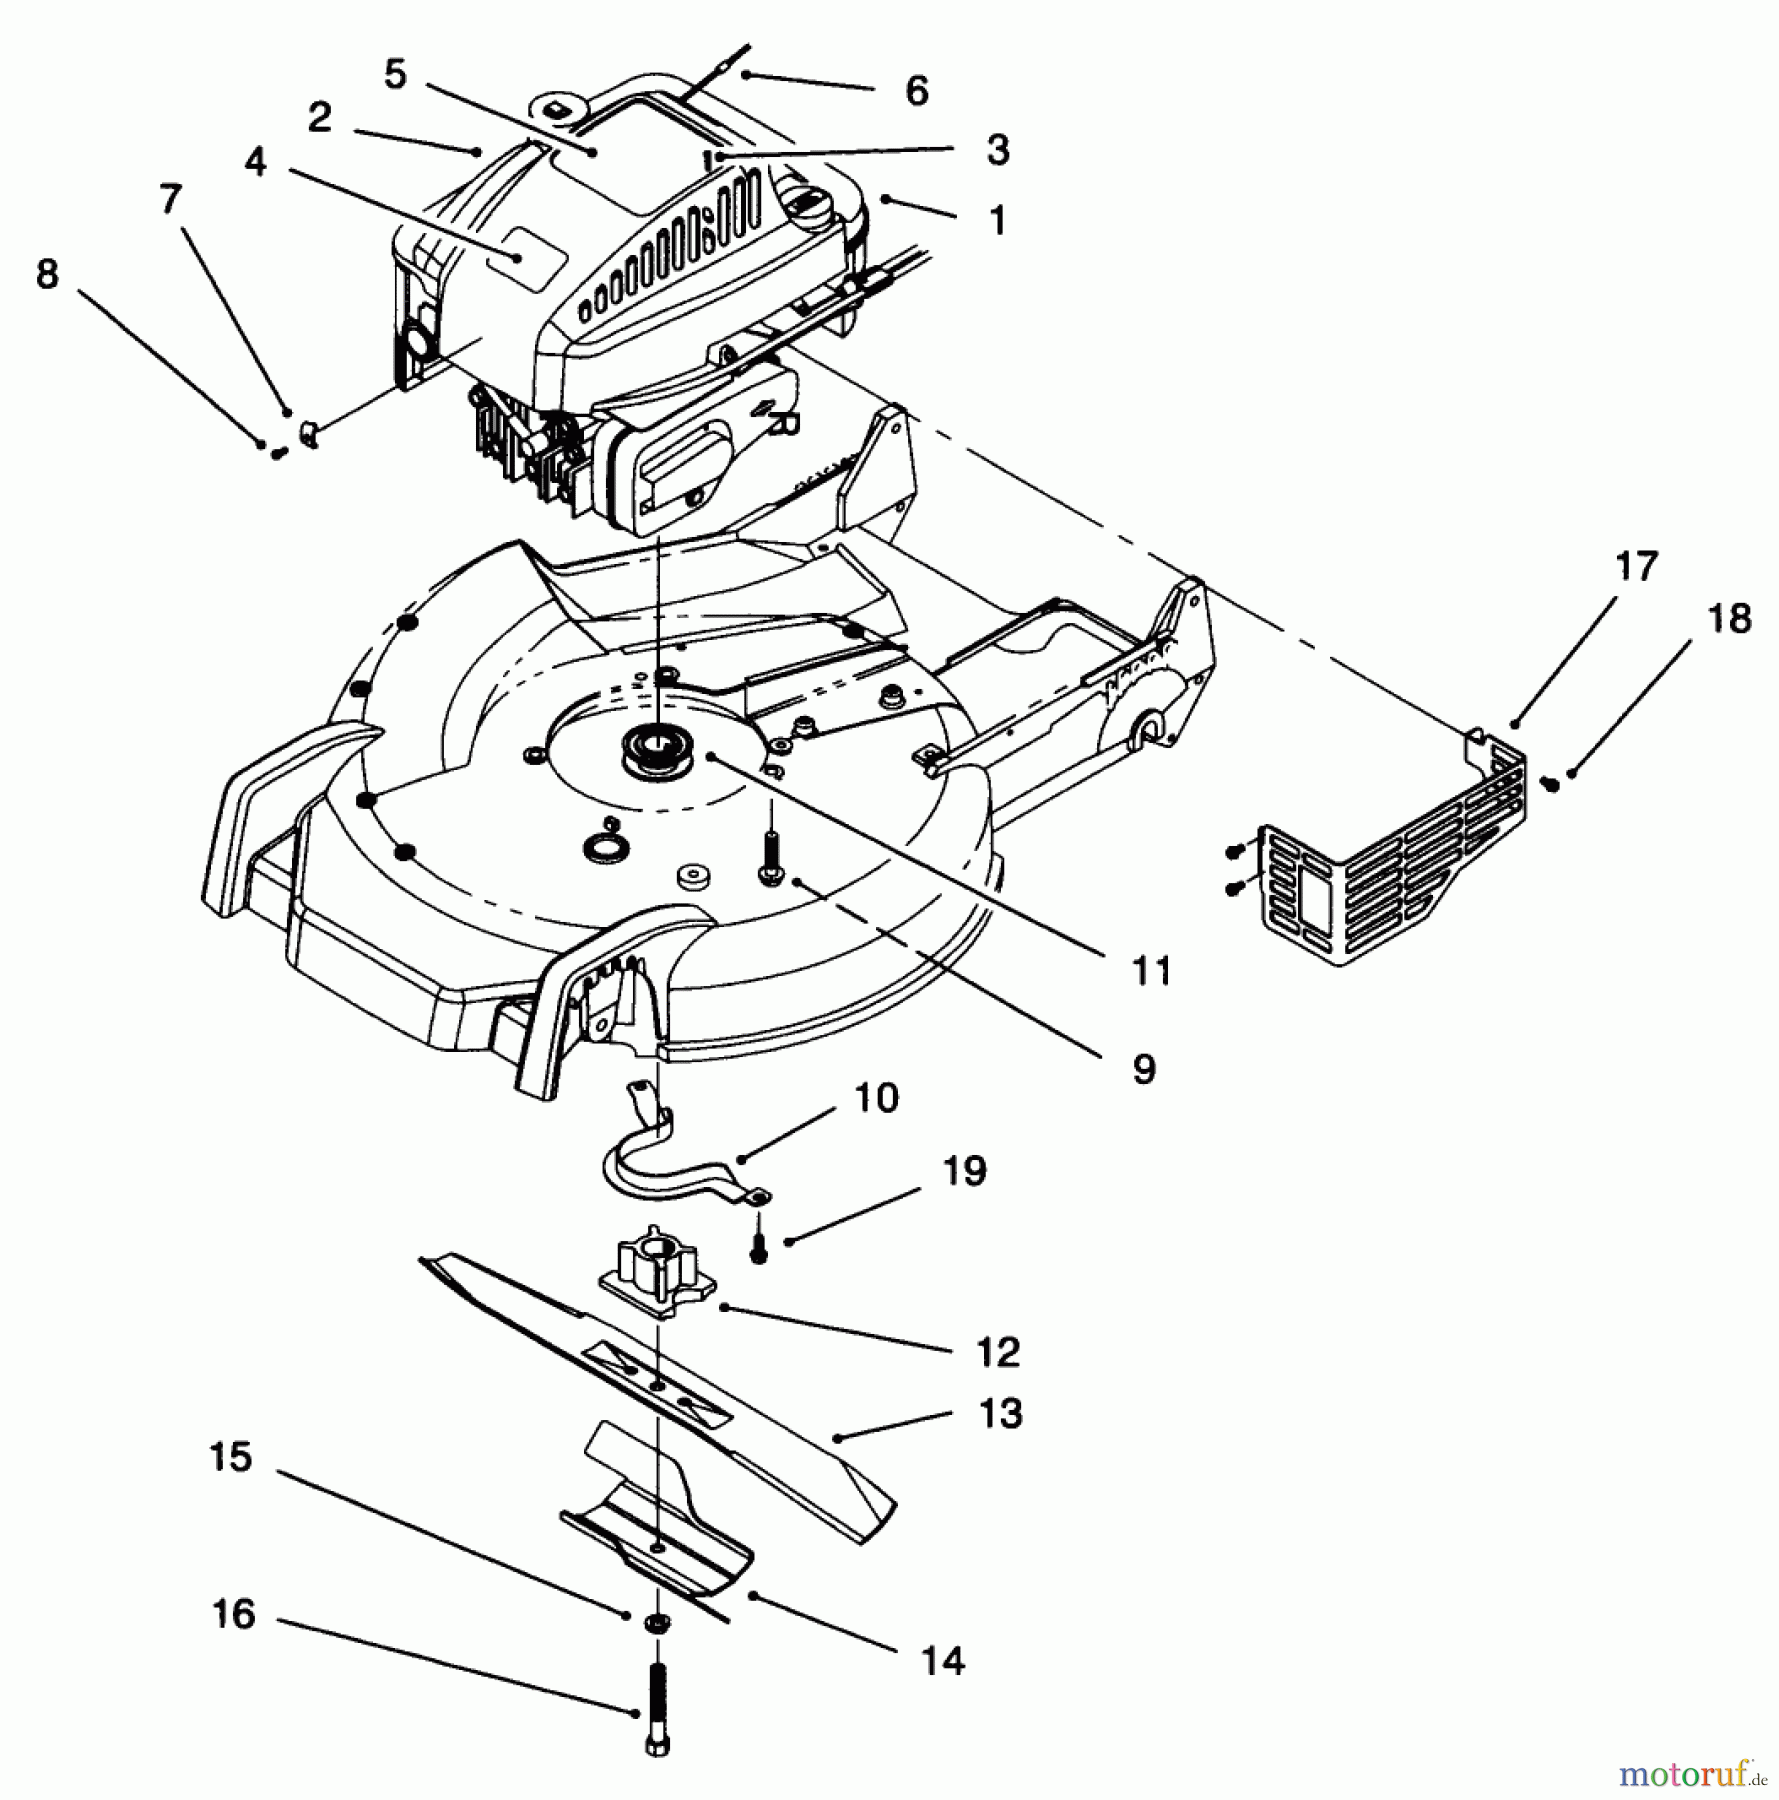  Toro Neu Mowers, Walk-Behind Seite 1 20472 - Toro Super Recycler Lawnmower, 1996 (6900001-6999999) ENGINE ASSEMBLY